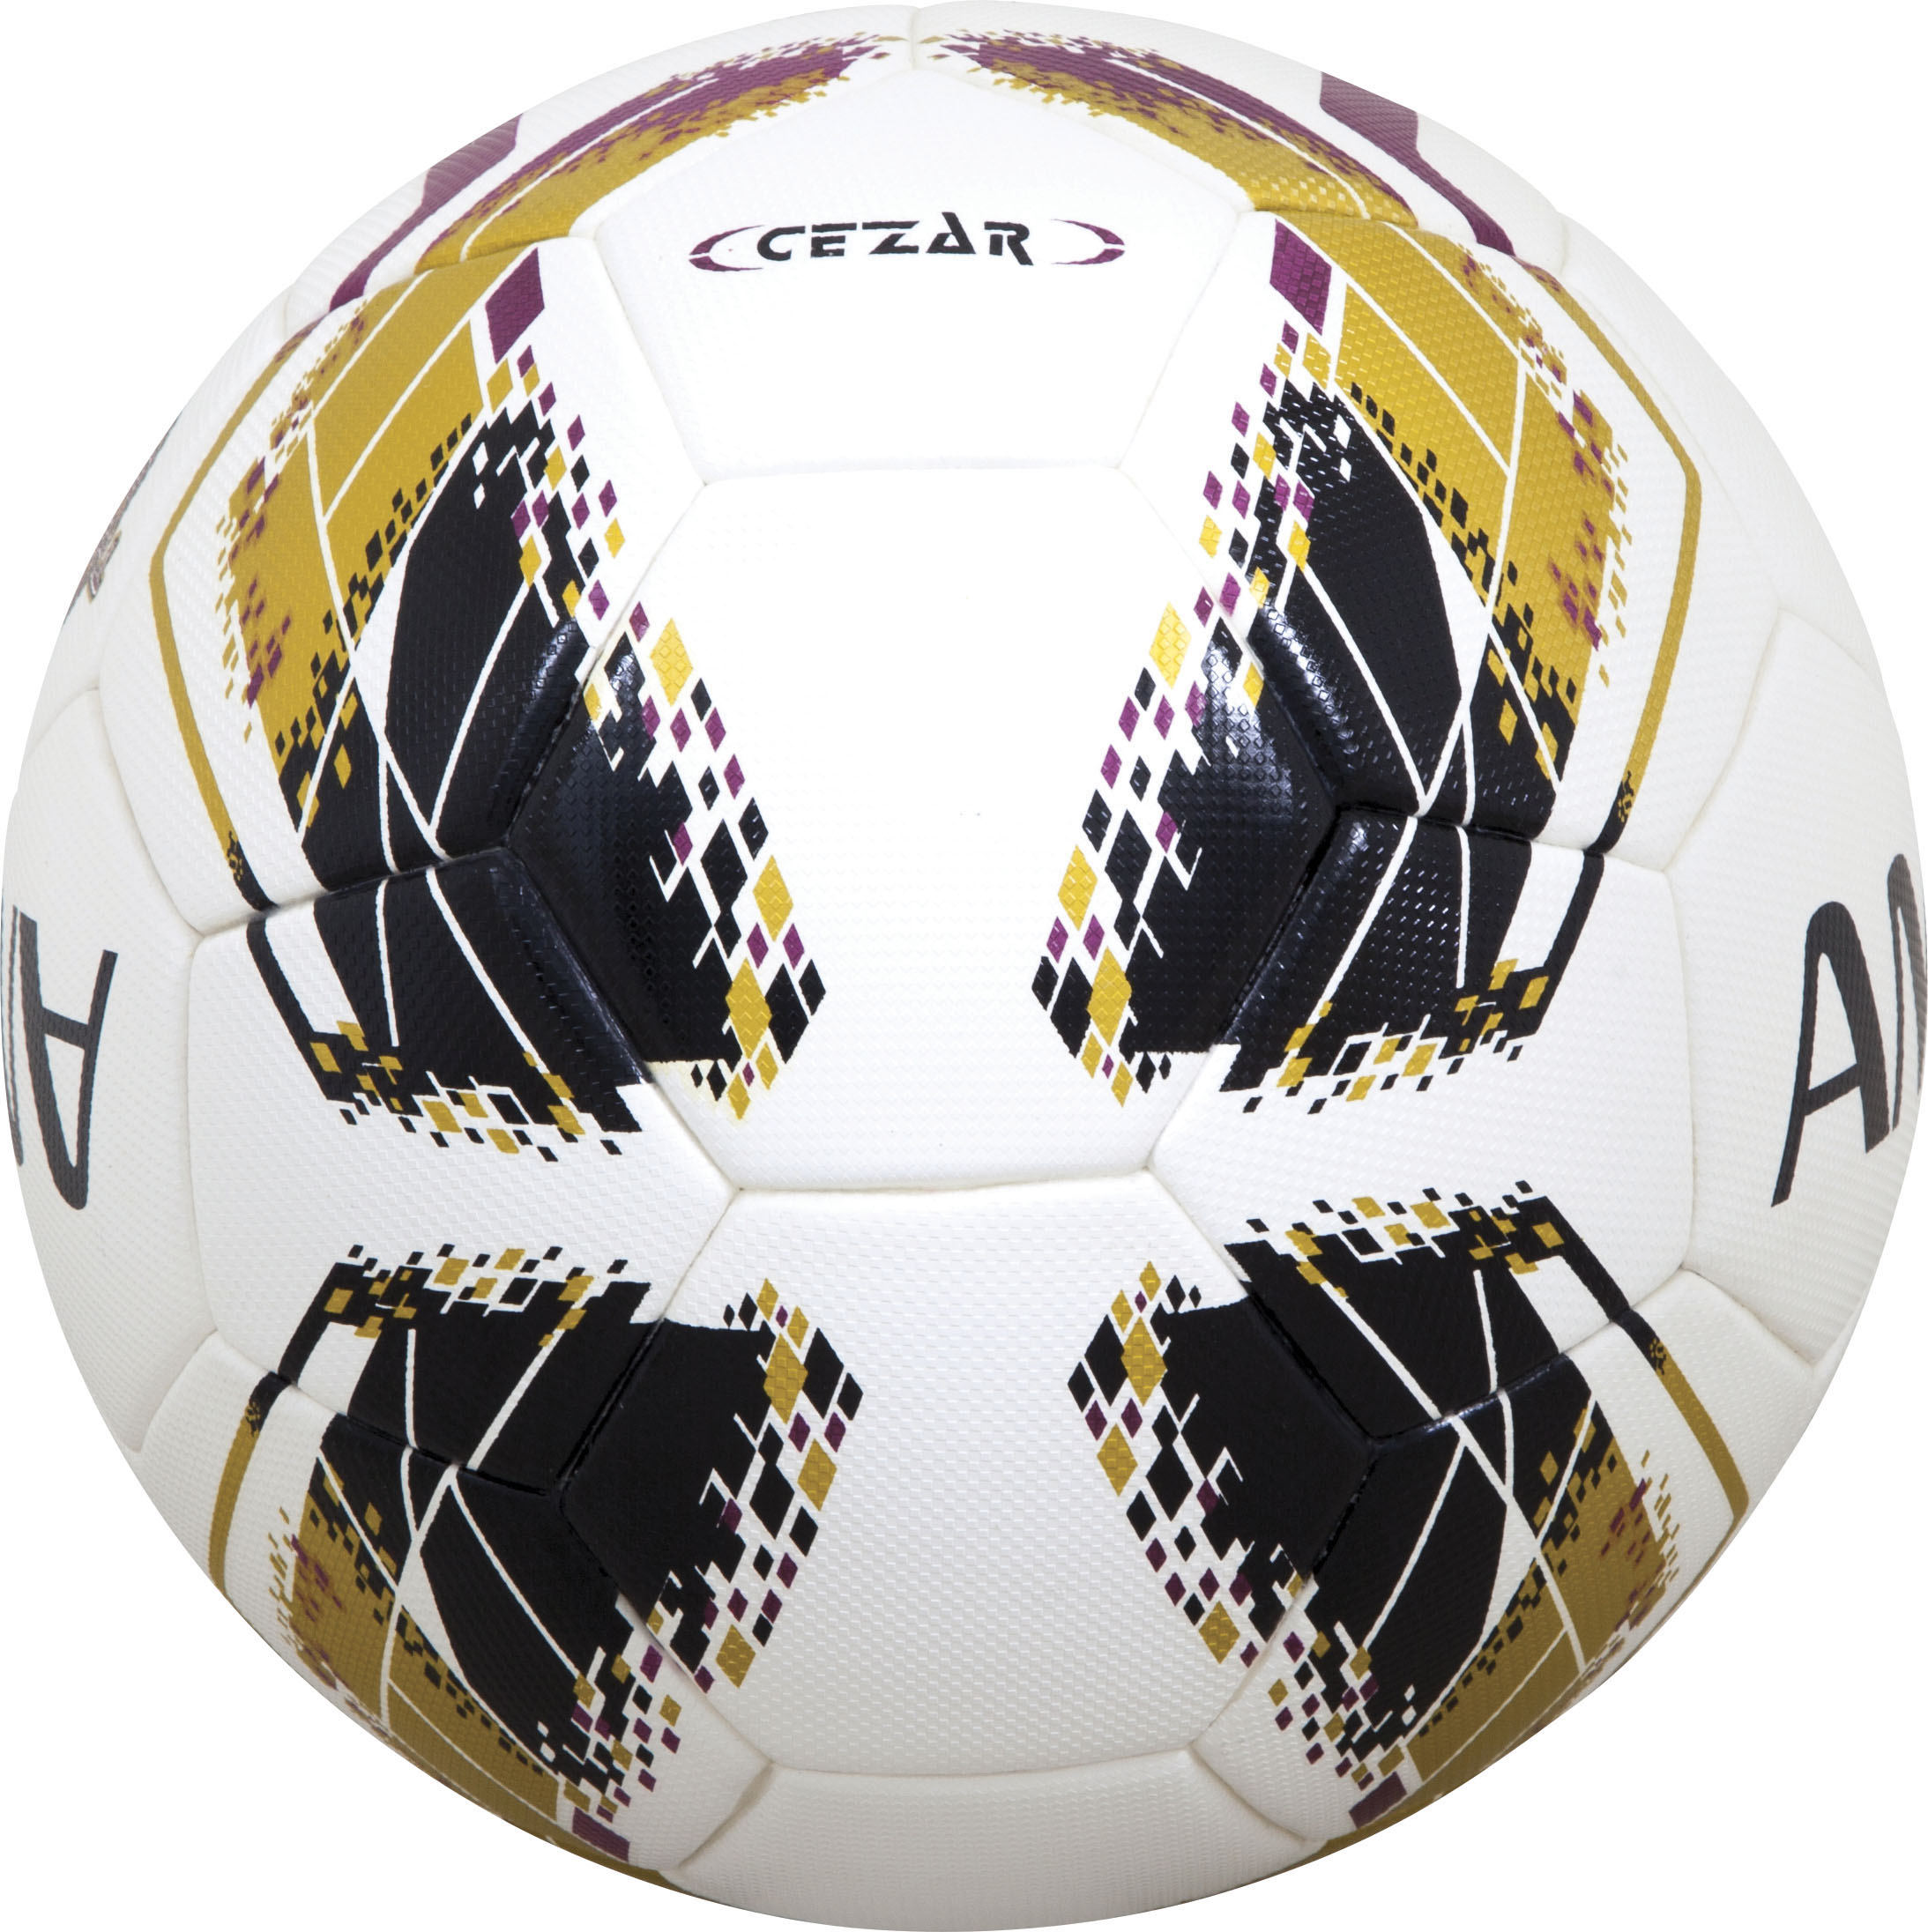 Μπάλα Ποδοσφαίρου AMILA Fantom No. 5